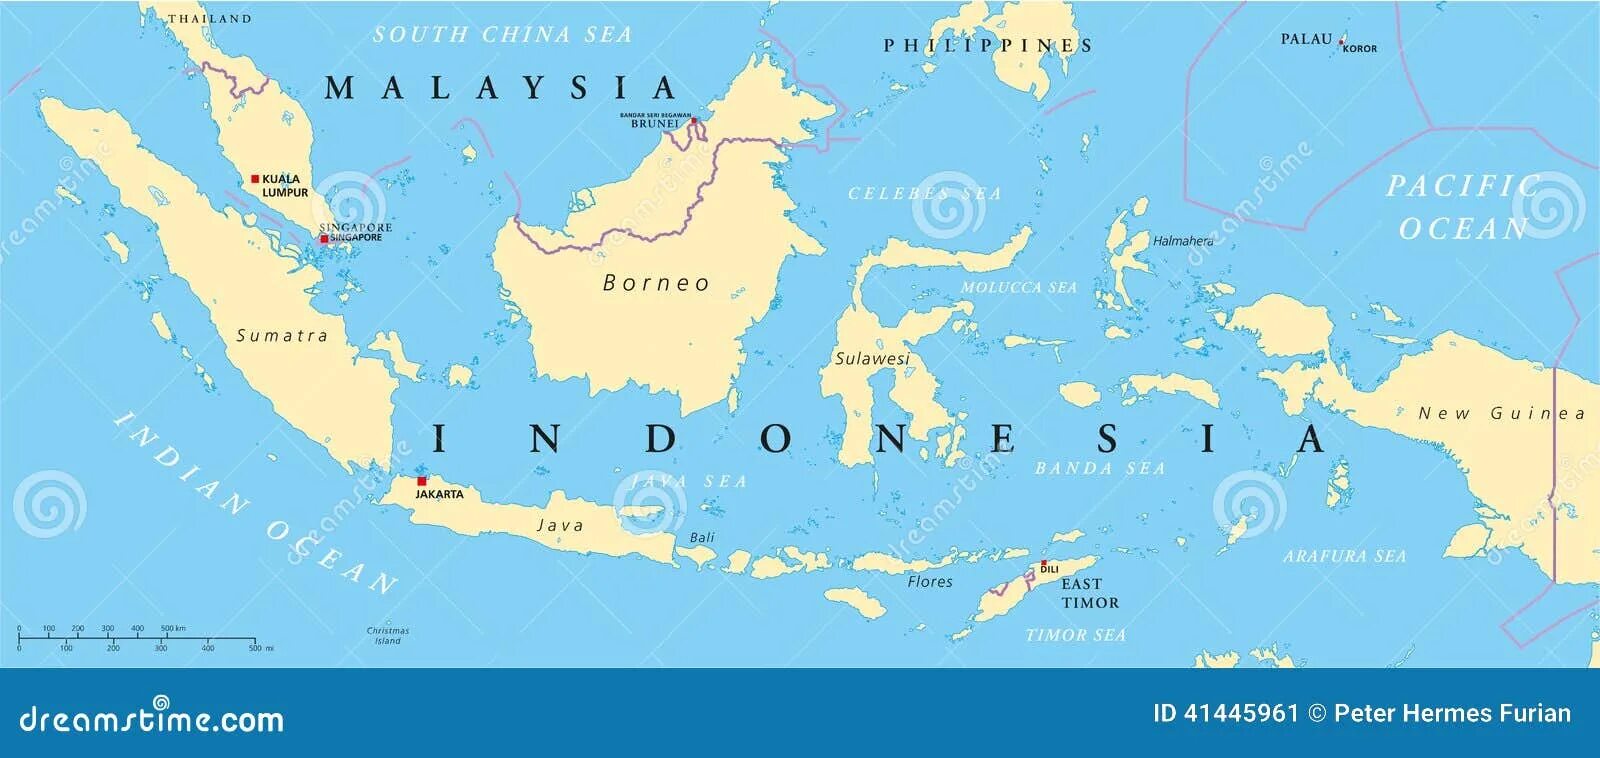 Территория малайзии. Малайзия и Индонезия на карте. Бали на карте. Джакарта-остров Бали в Индонезии на карте.